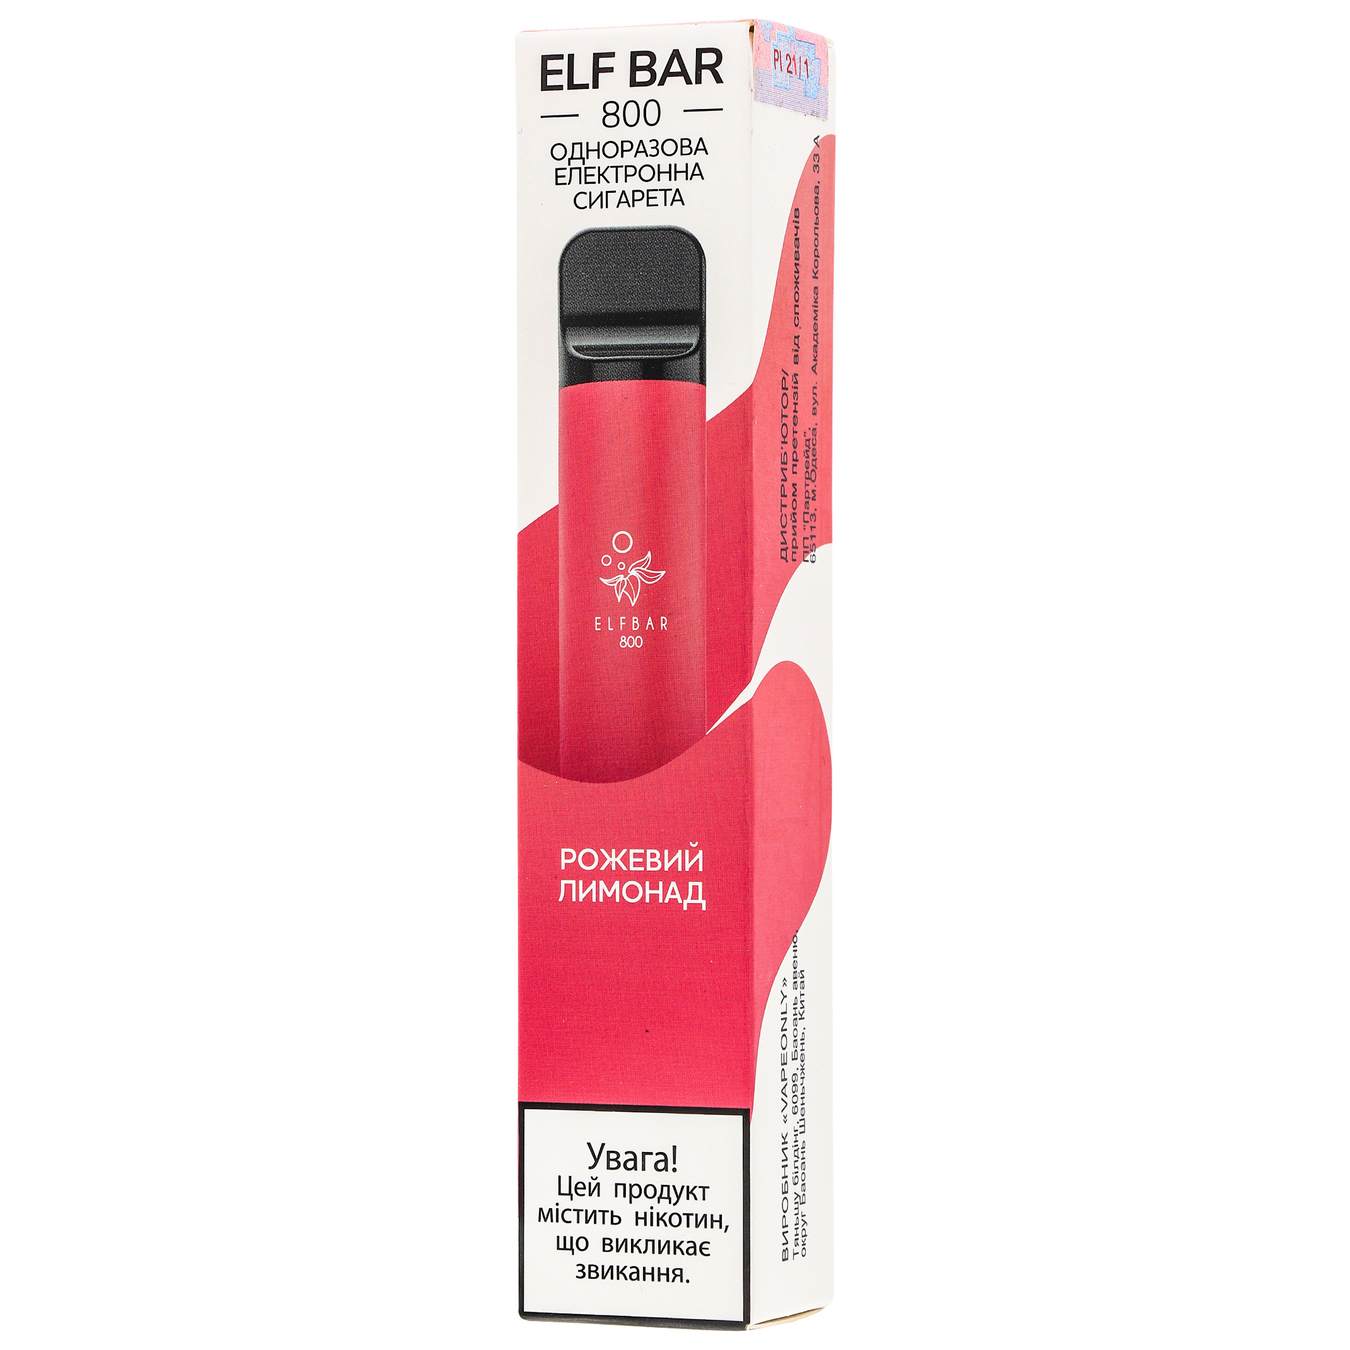 Випарювач електронний Elf Bar рожевий лимонад 5% 3,2мл (ціна вказана без акцизу)